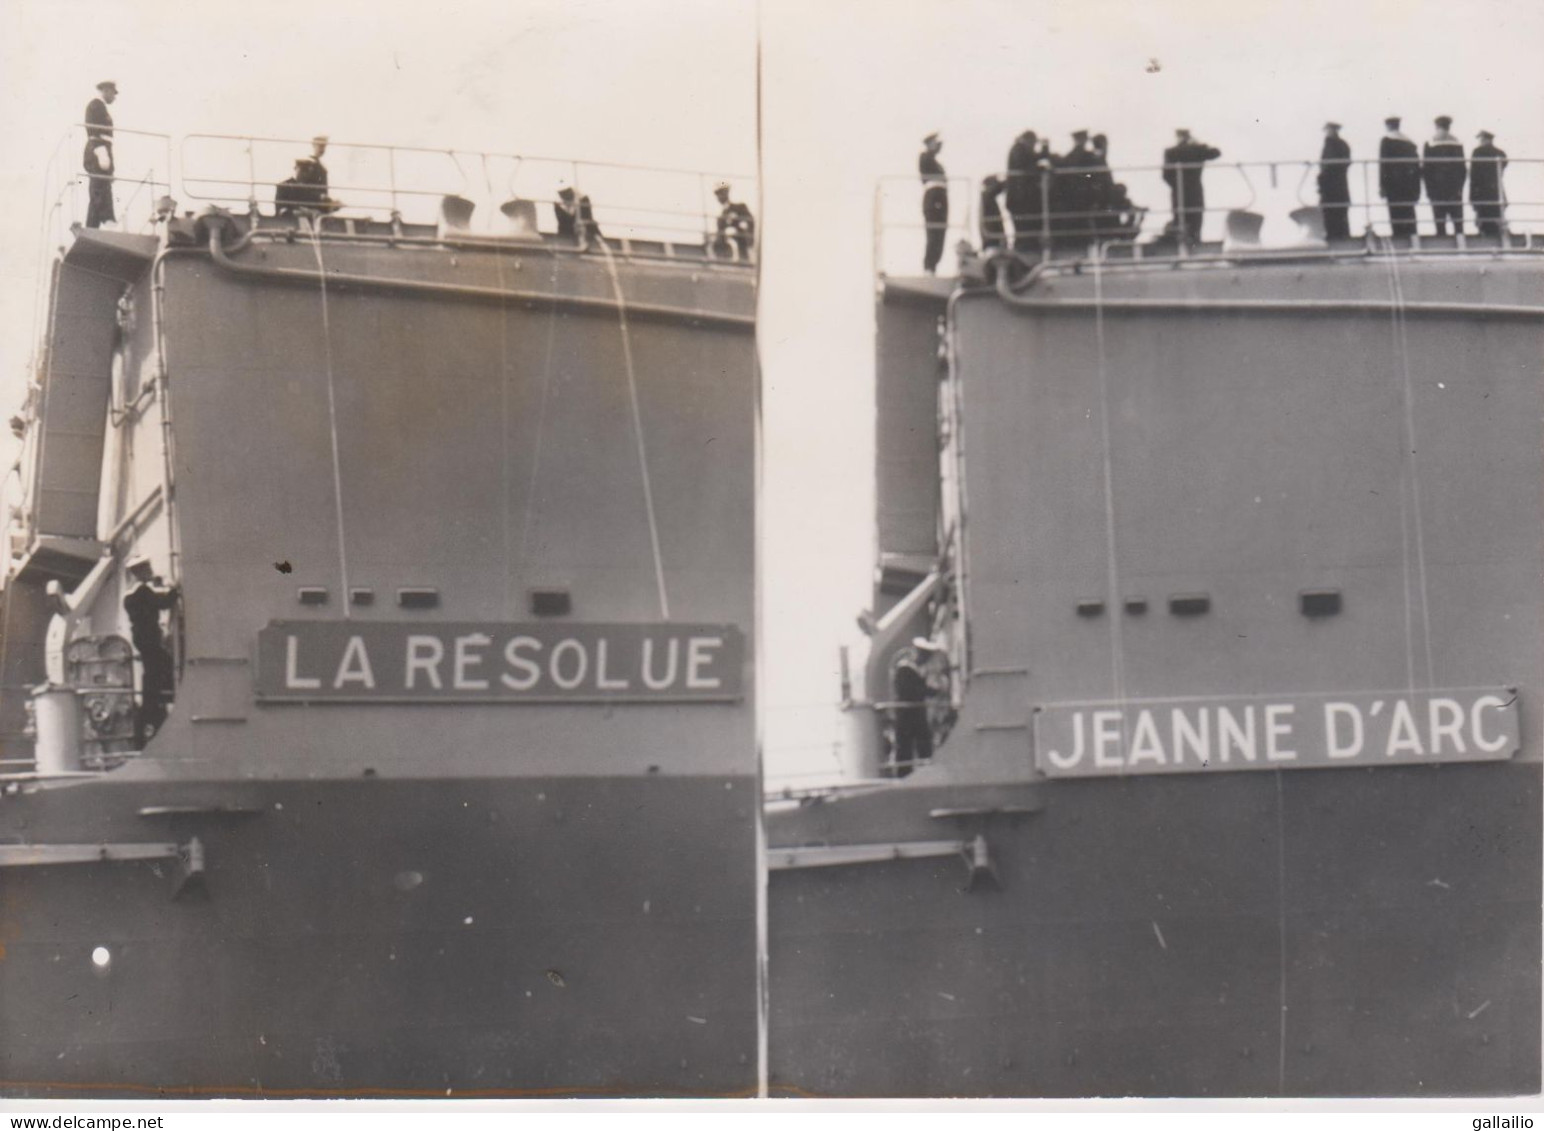 PHOTO PRESSE LE PORTE HELICOPTERES LA RESOLUE DEVIENT JEANNE D'ARC A F P PHOTO JUILLET 1964 FORMAT 18 X 13 CMS - Boats